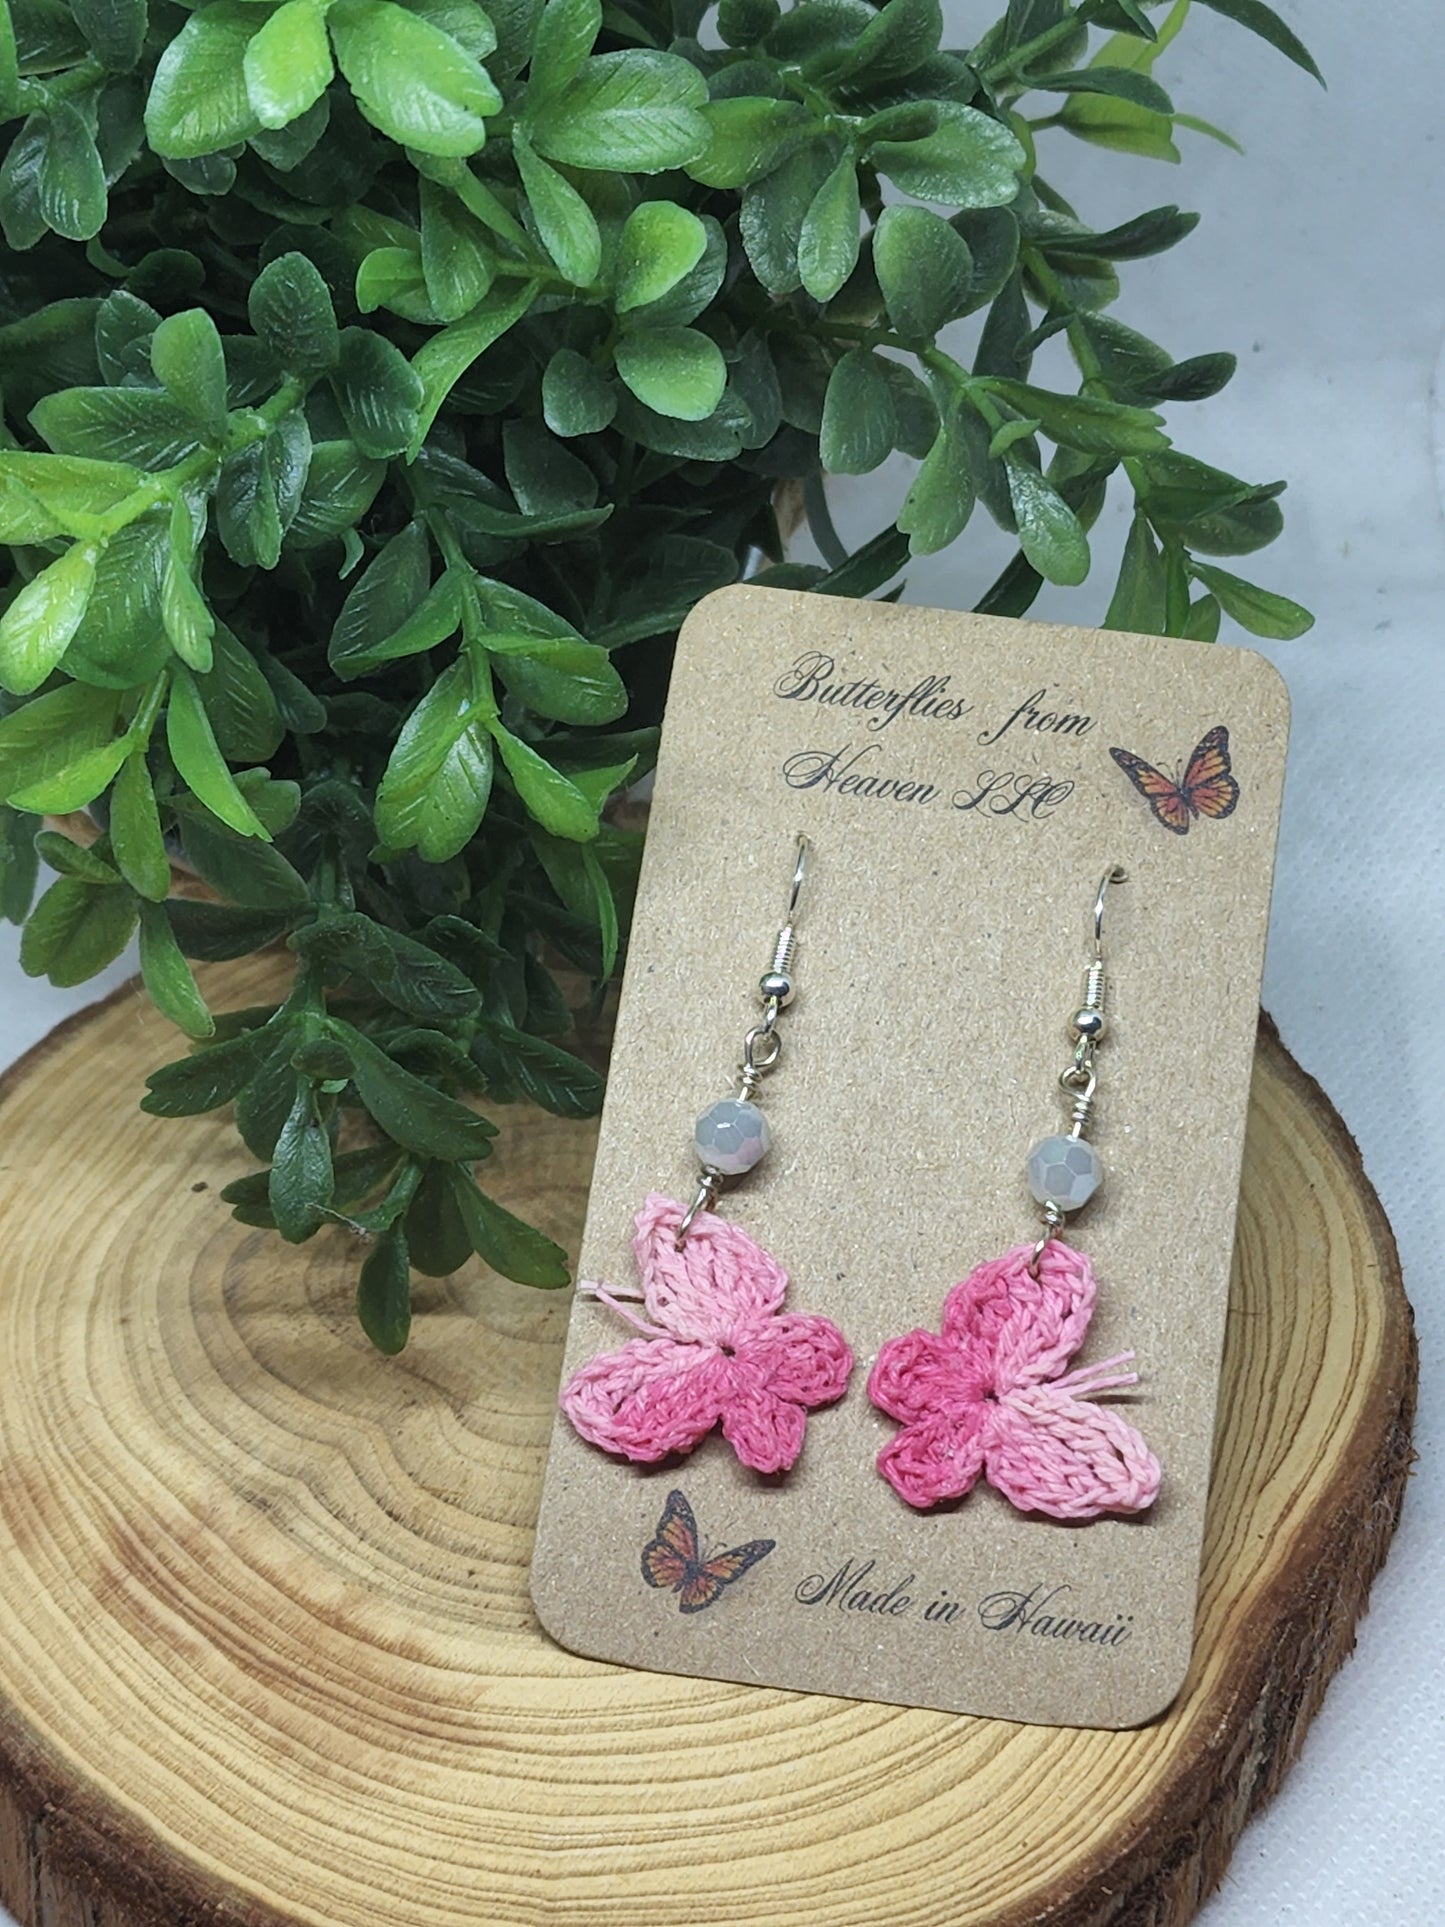 Crochet butterfly dangle earrings - BUTTERFLIES FROM HEAVEN